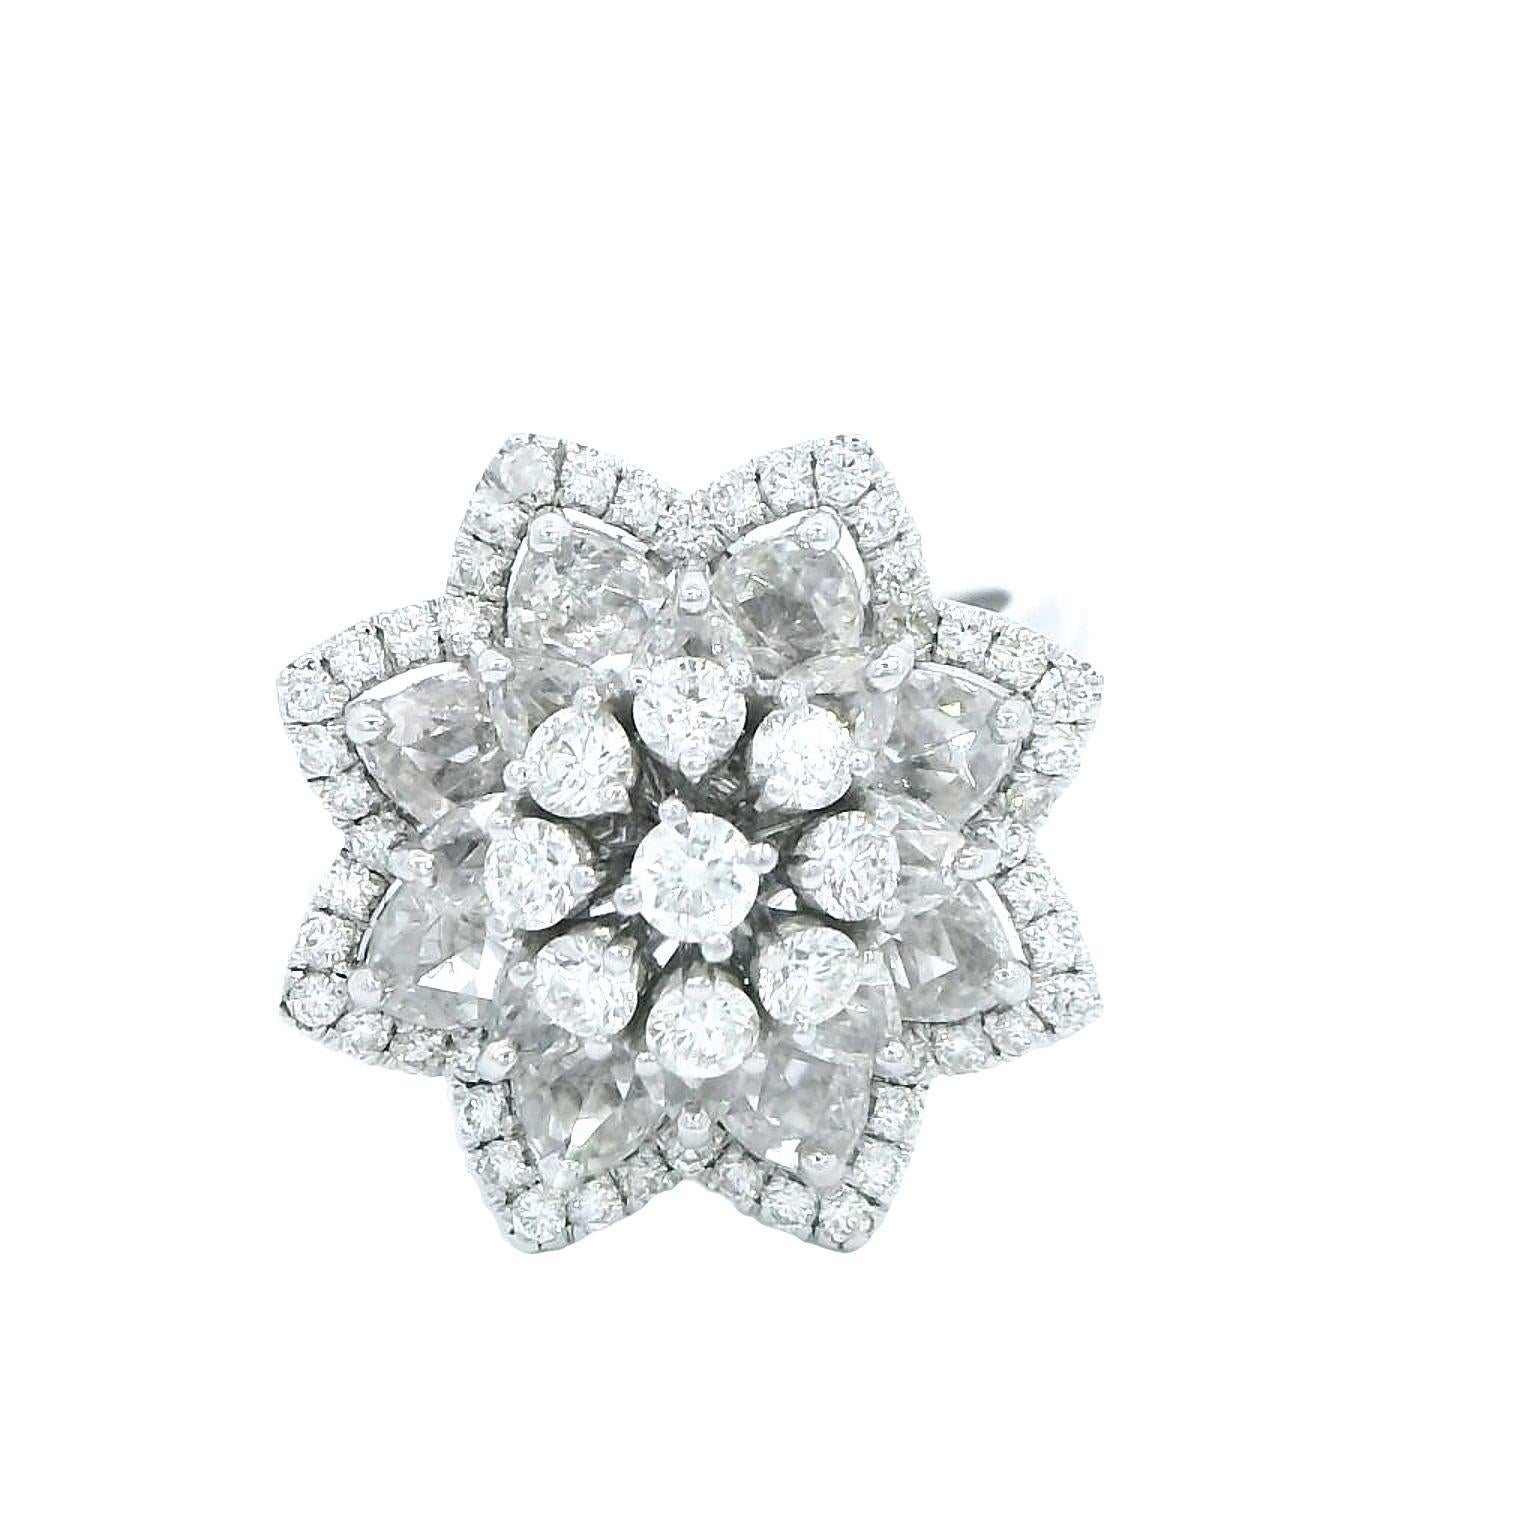 Inspirée par la fleur de lys, cette bague est ornée de sept diamants ronds de taille brillant, centrés dans un arrangement de pétales en diamants de taille rose. Une bague féminine et délicate pour définir la joie d'être une femme, et de la